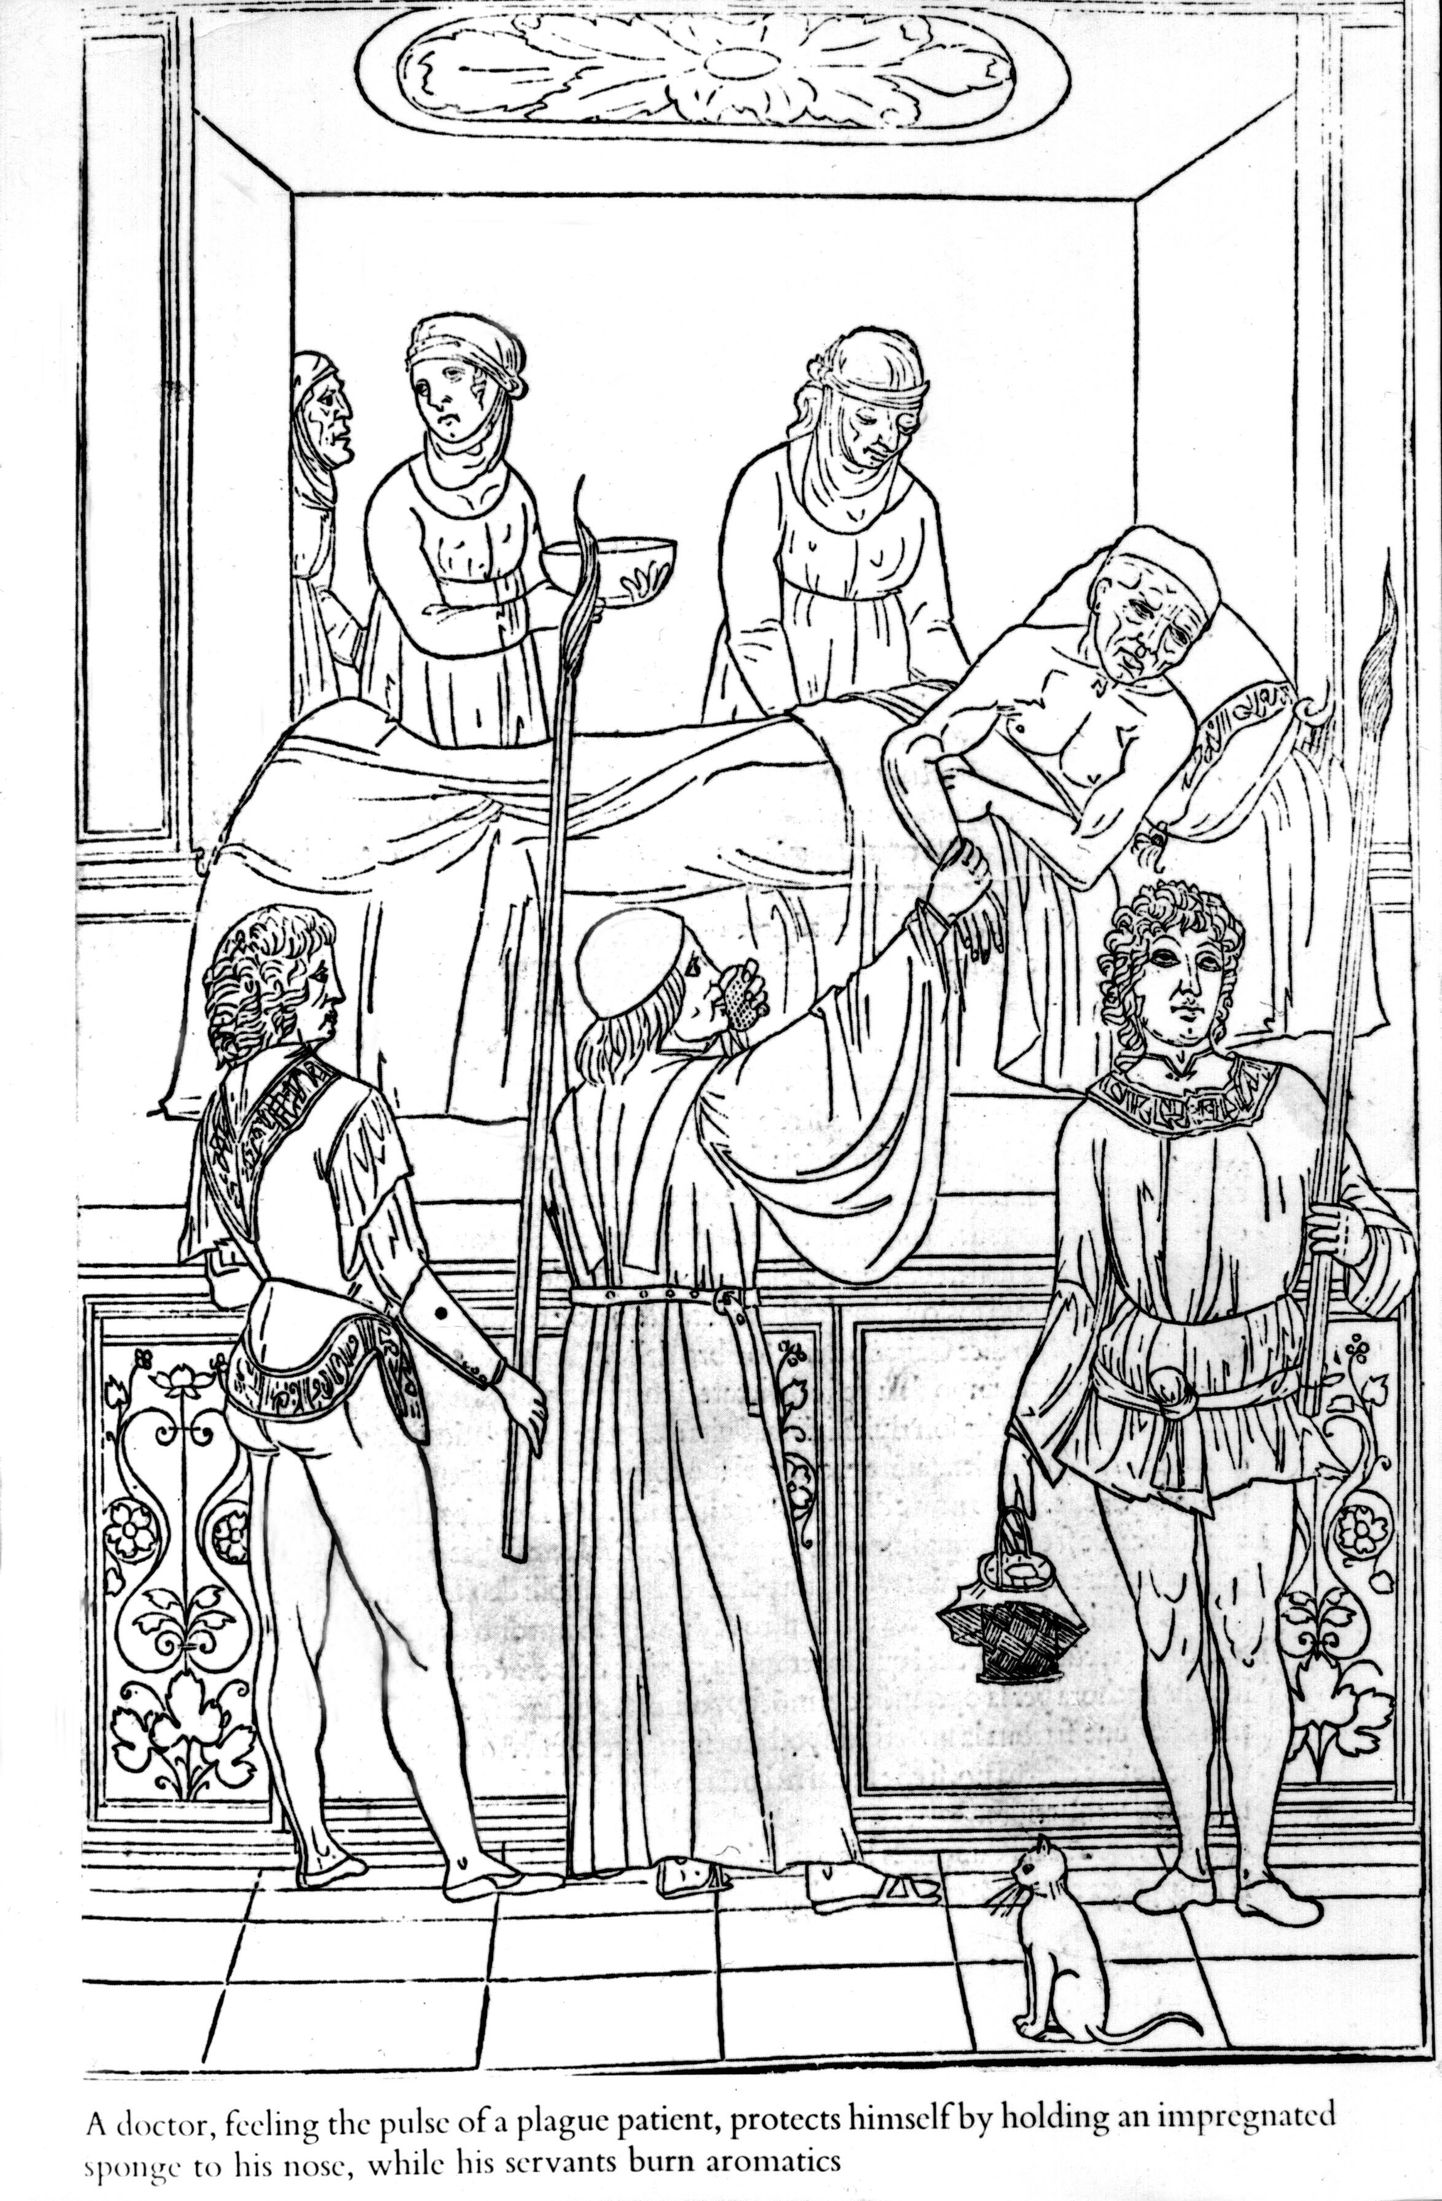 Средневековая картина - доктор лечит пациента от чумы. Иллюстрация.